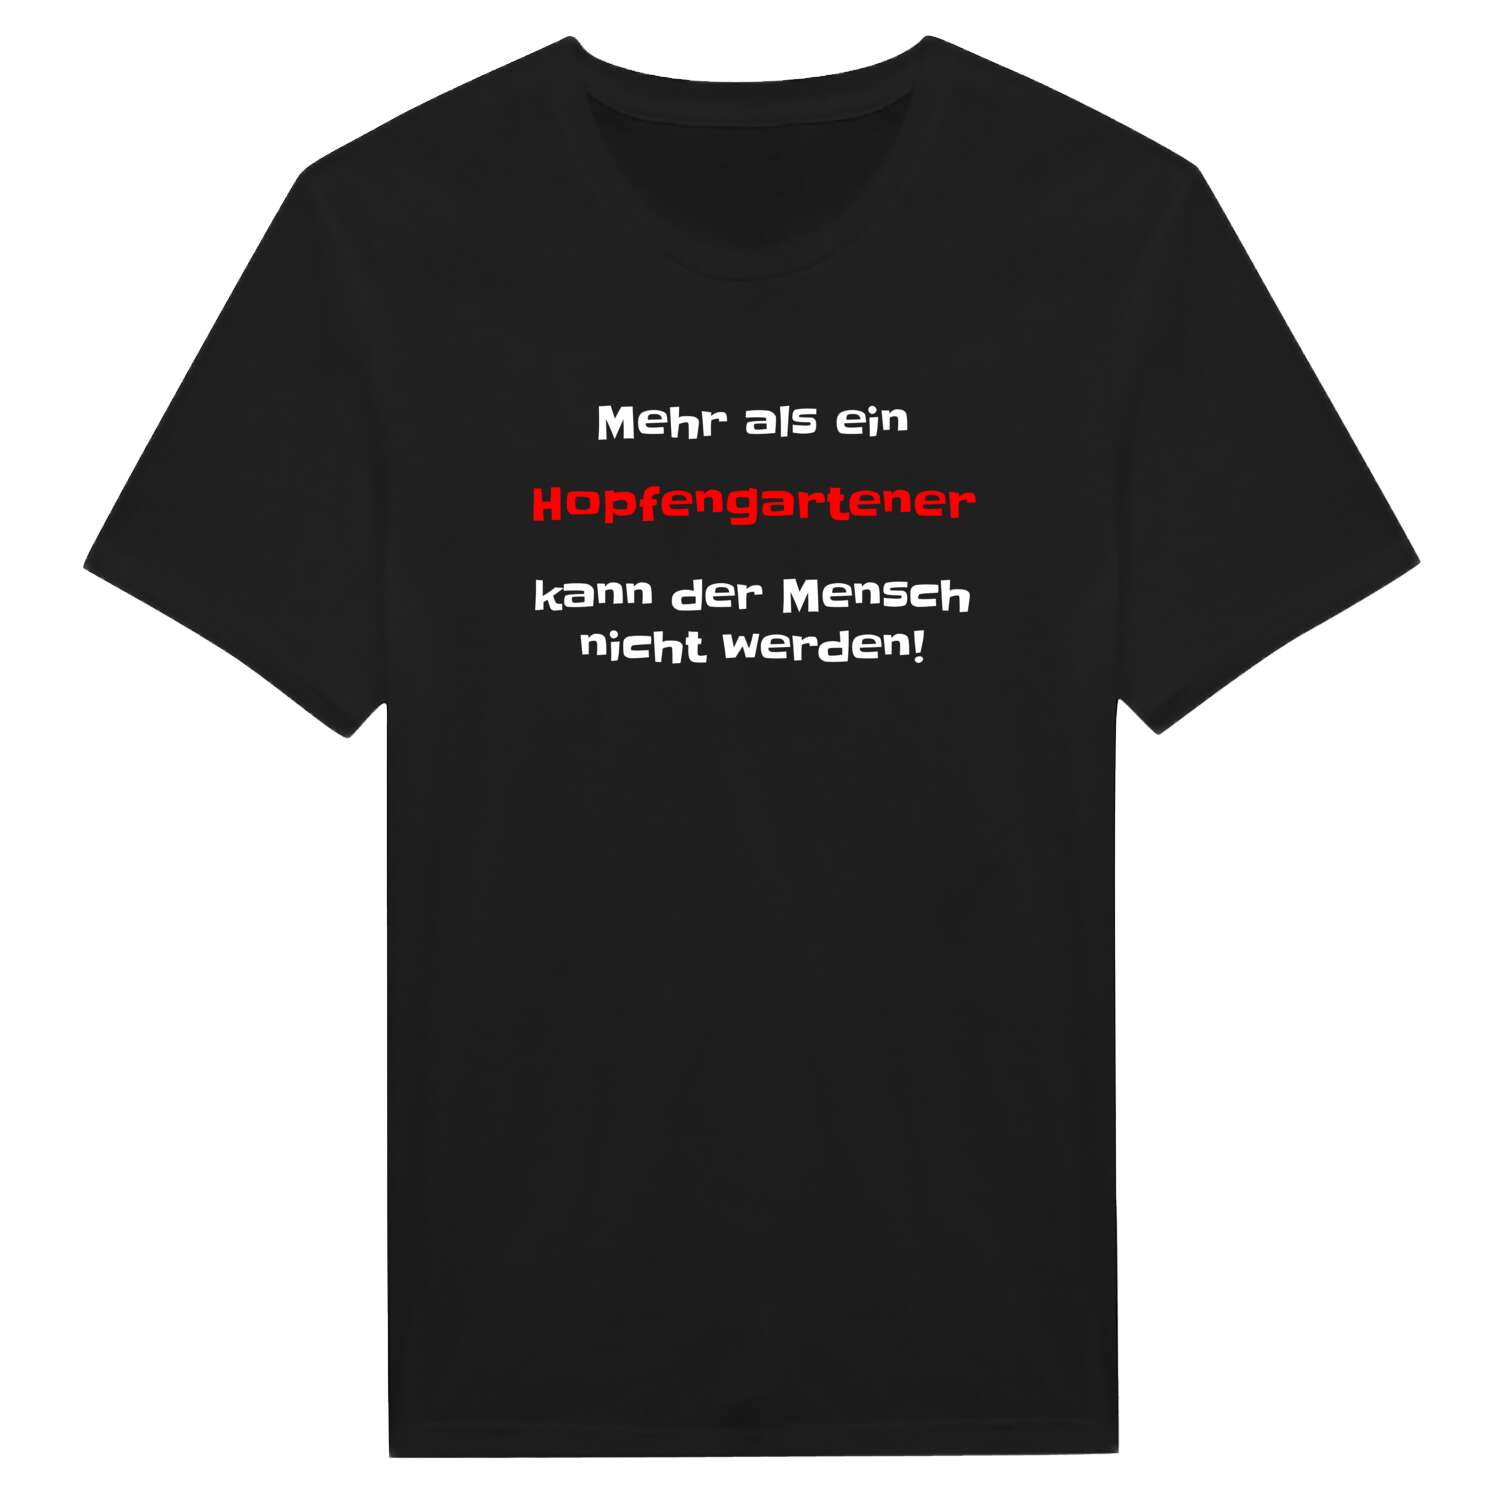 Hopfengarten T-Shirt »Mehr als ein«